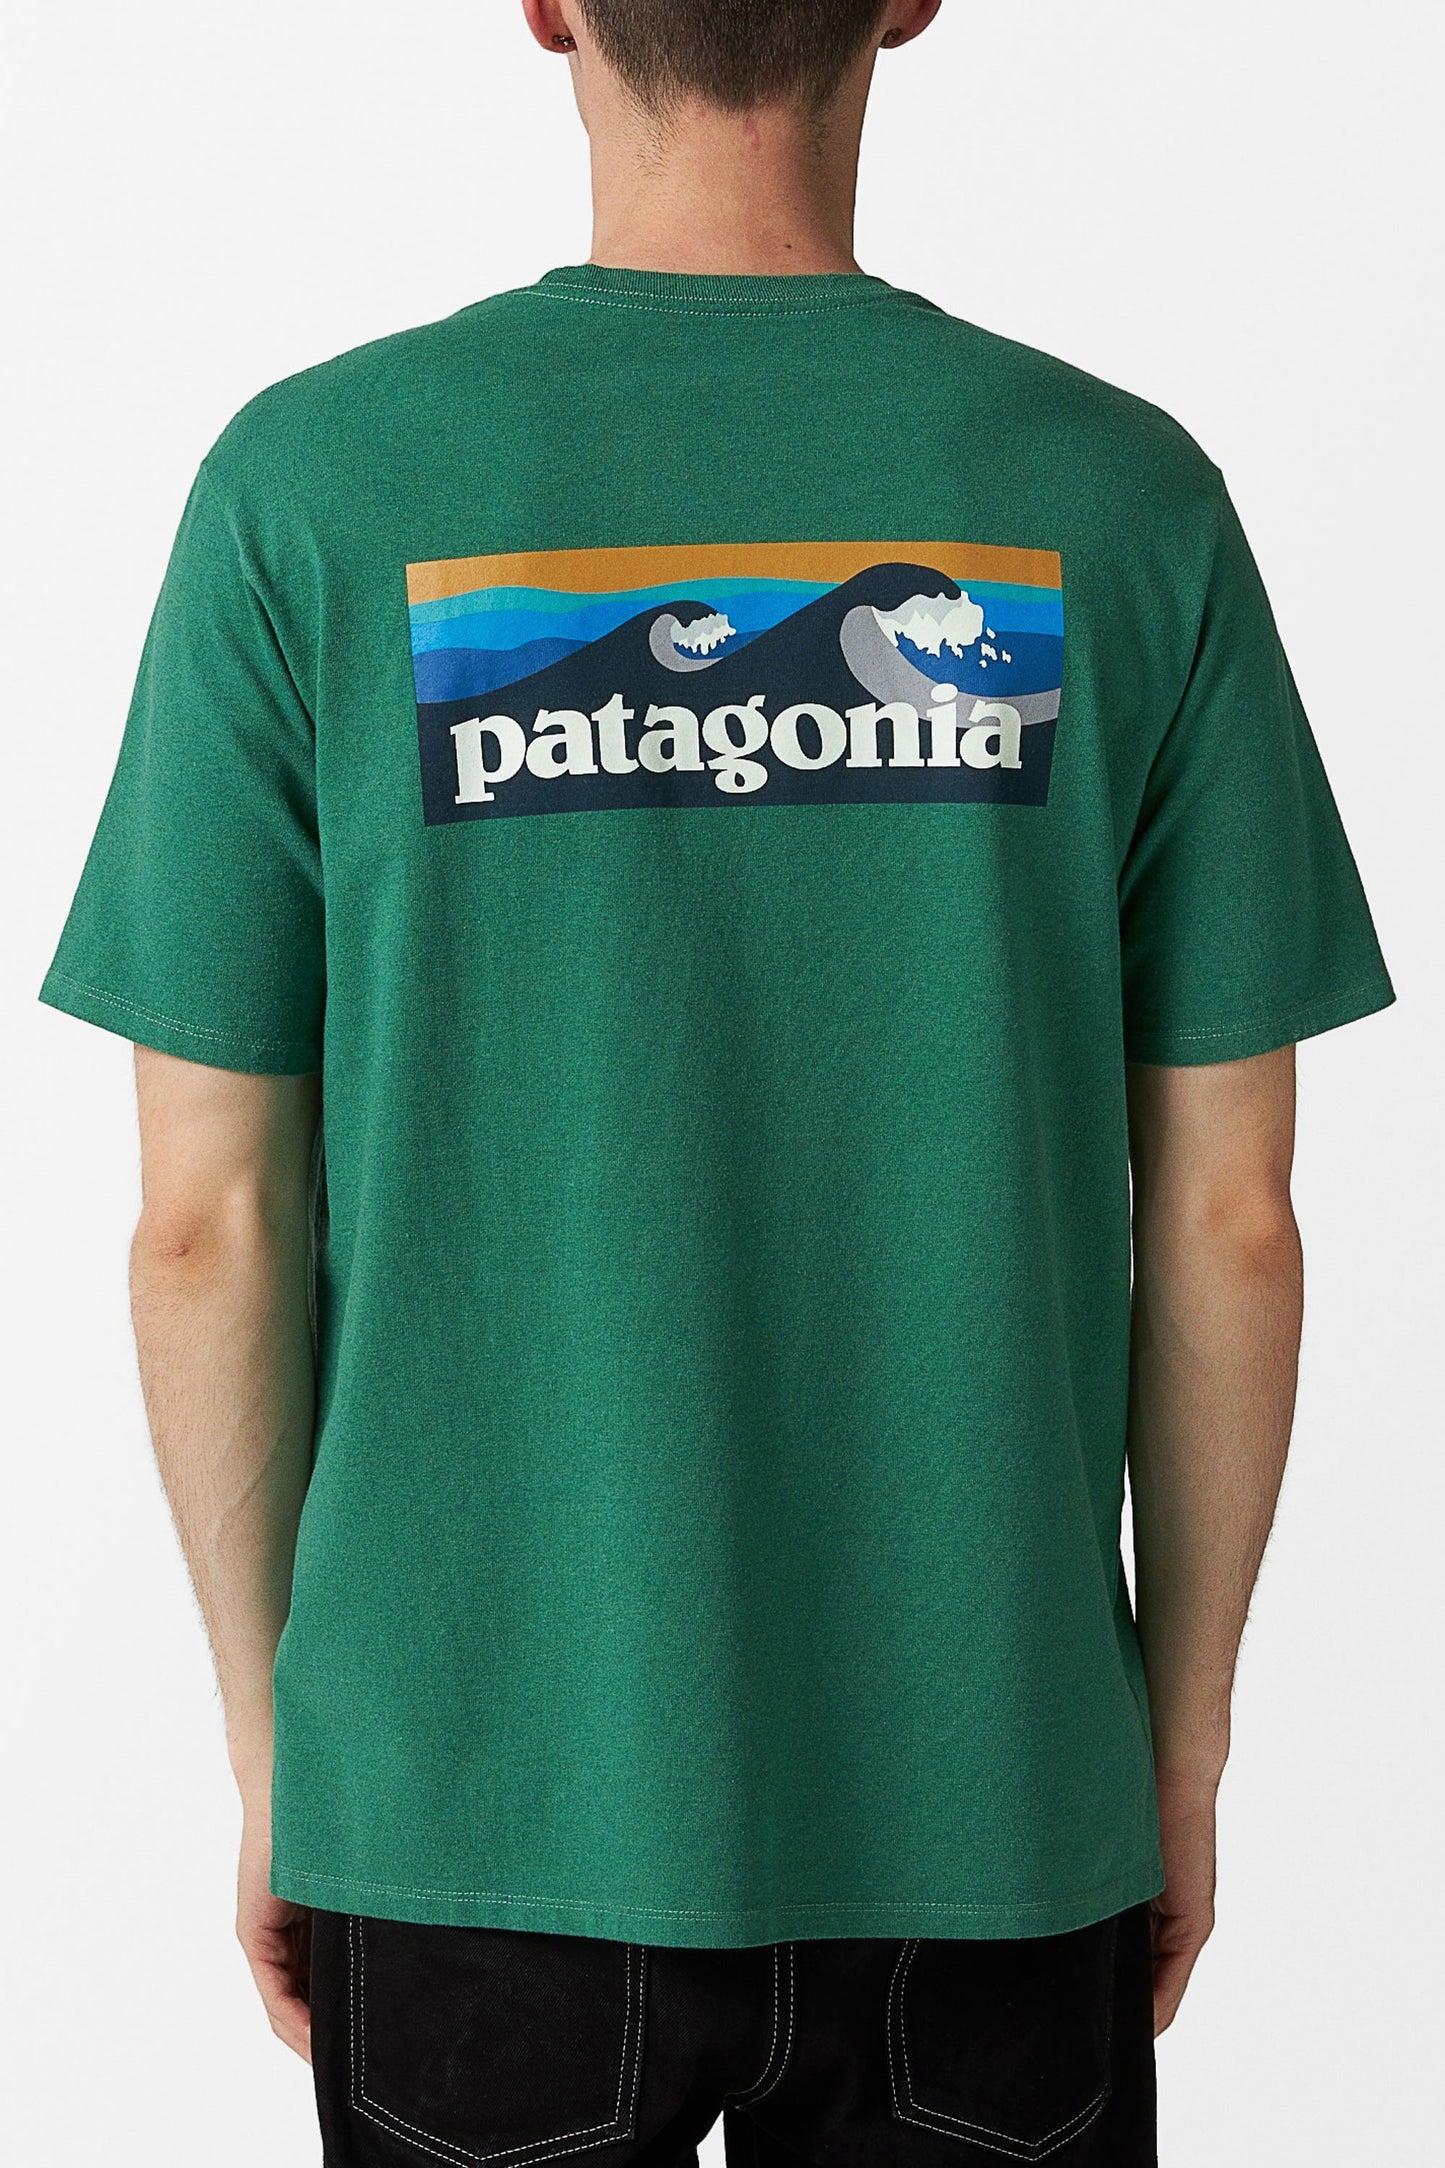 
                  
                    Pukas-surf-shop-patagonia-man-tee-Boardshort-logo-pocket-responsi-green
                  
                